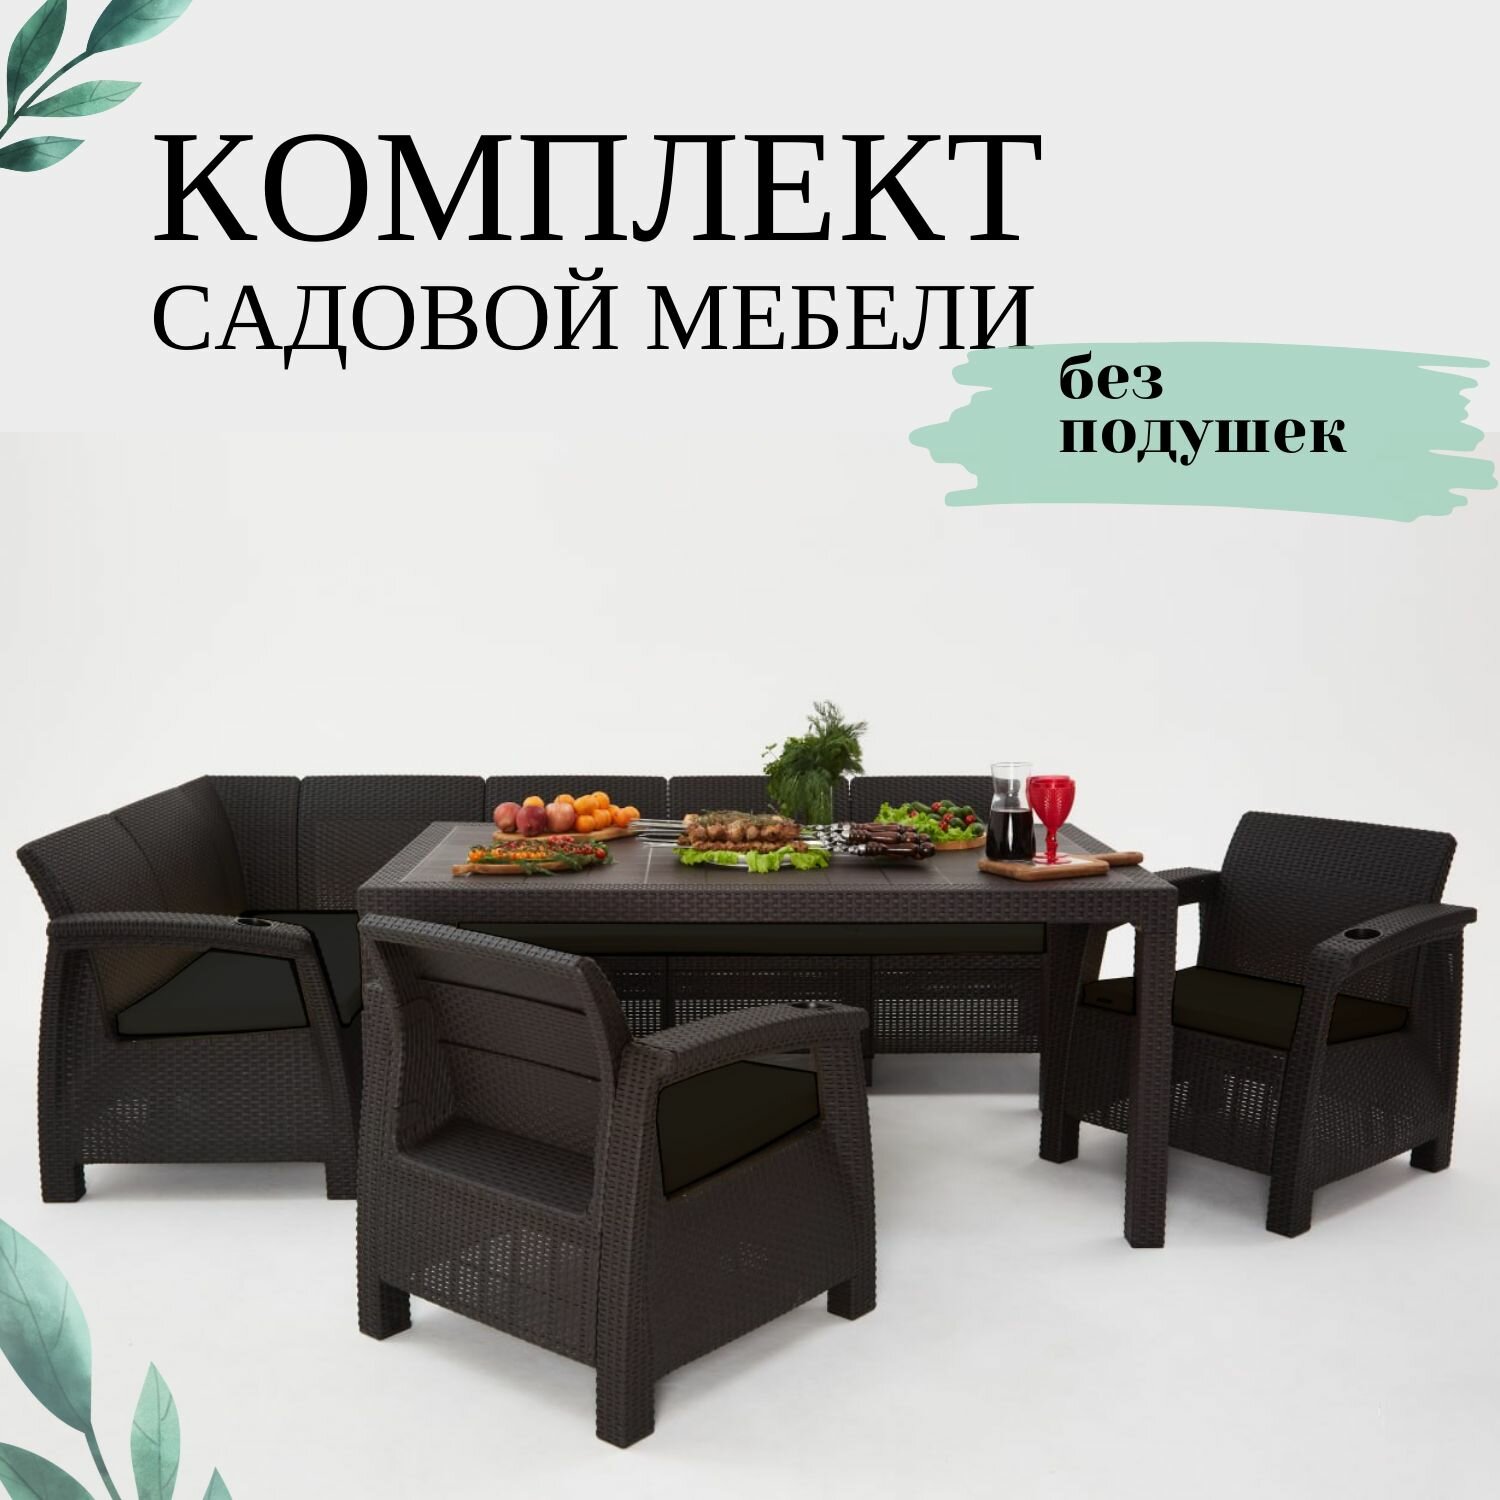 Комплект садовой мебели из ротанга Set 5+1+1+обеденный стол 160х95, без подушек